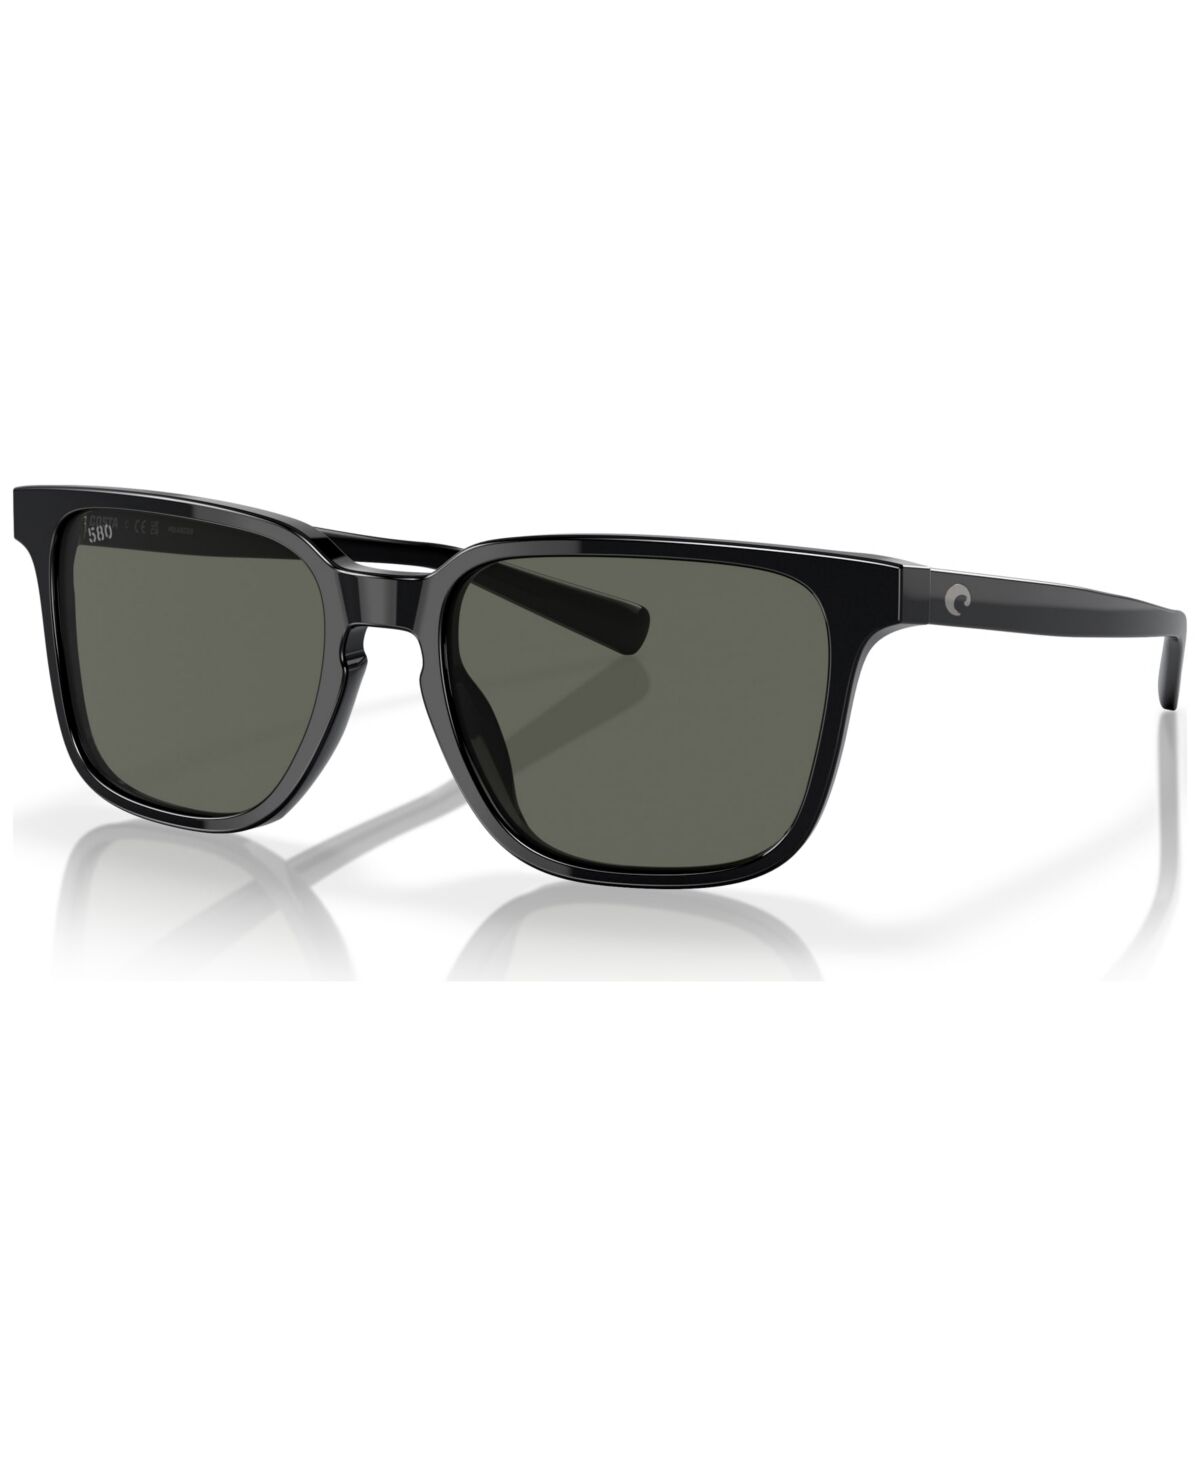 Costa Del Mar Men's Kailano Polarized Sunglasses, 6S2013 - Black